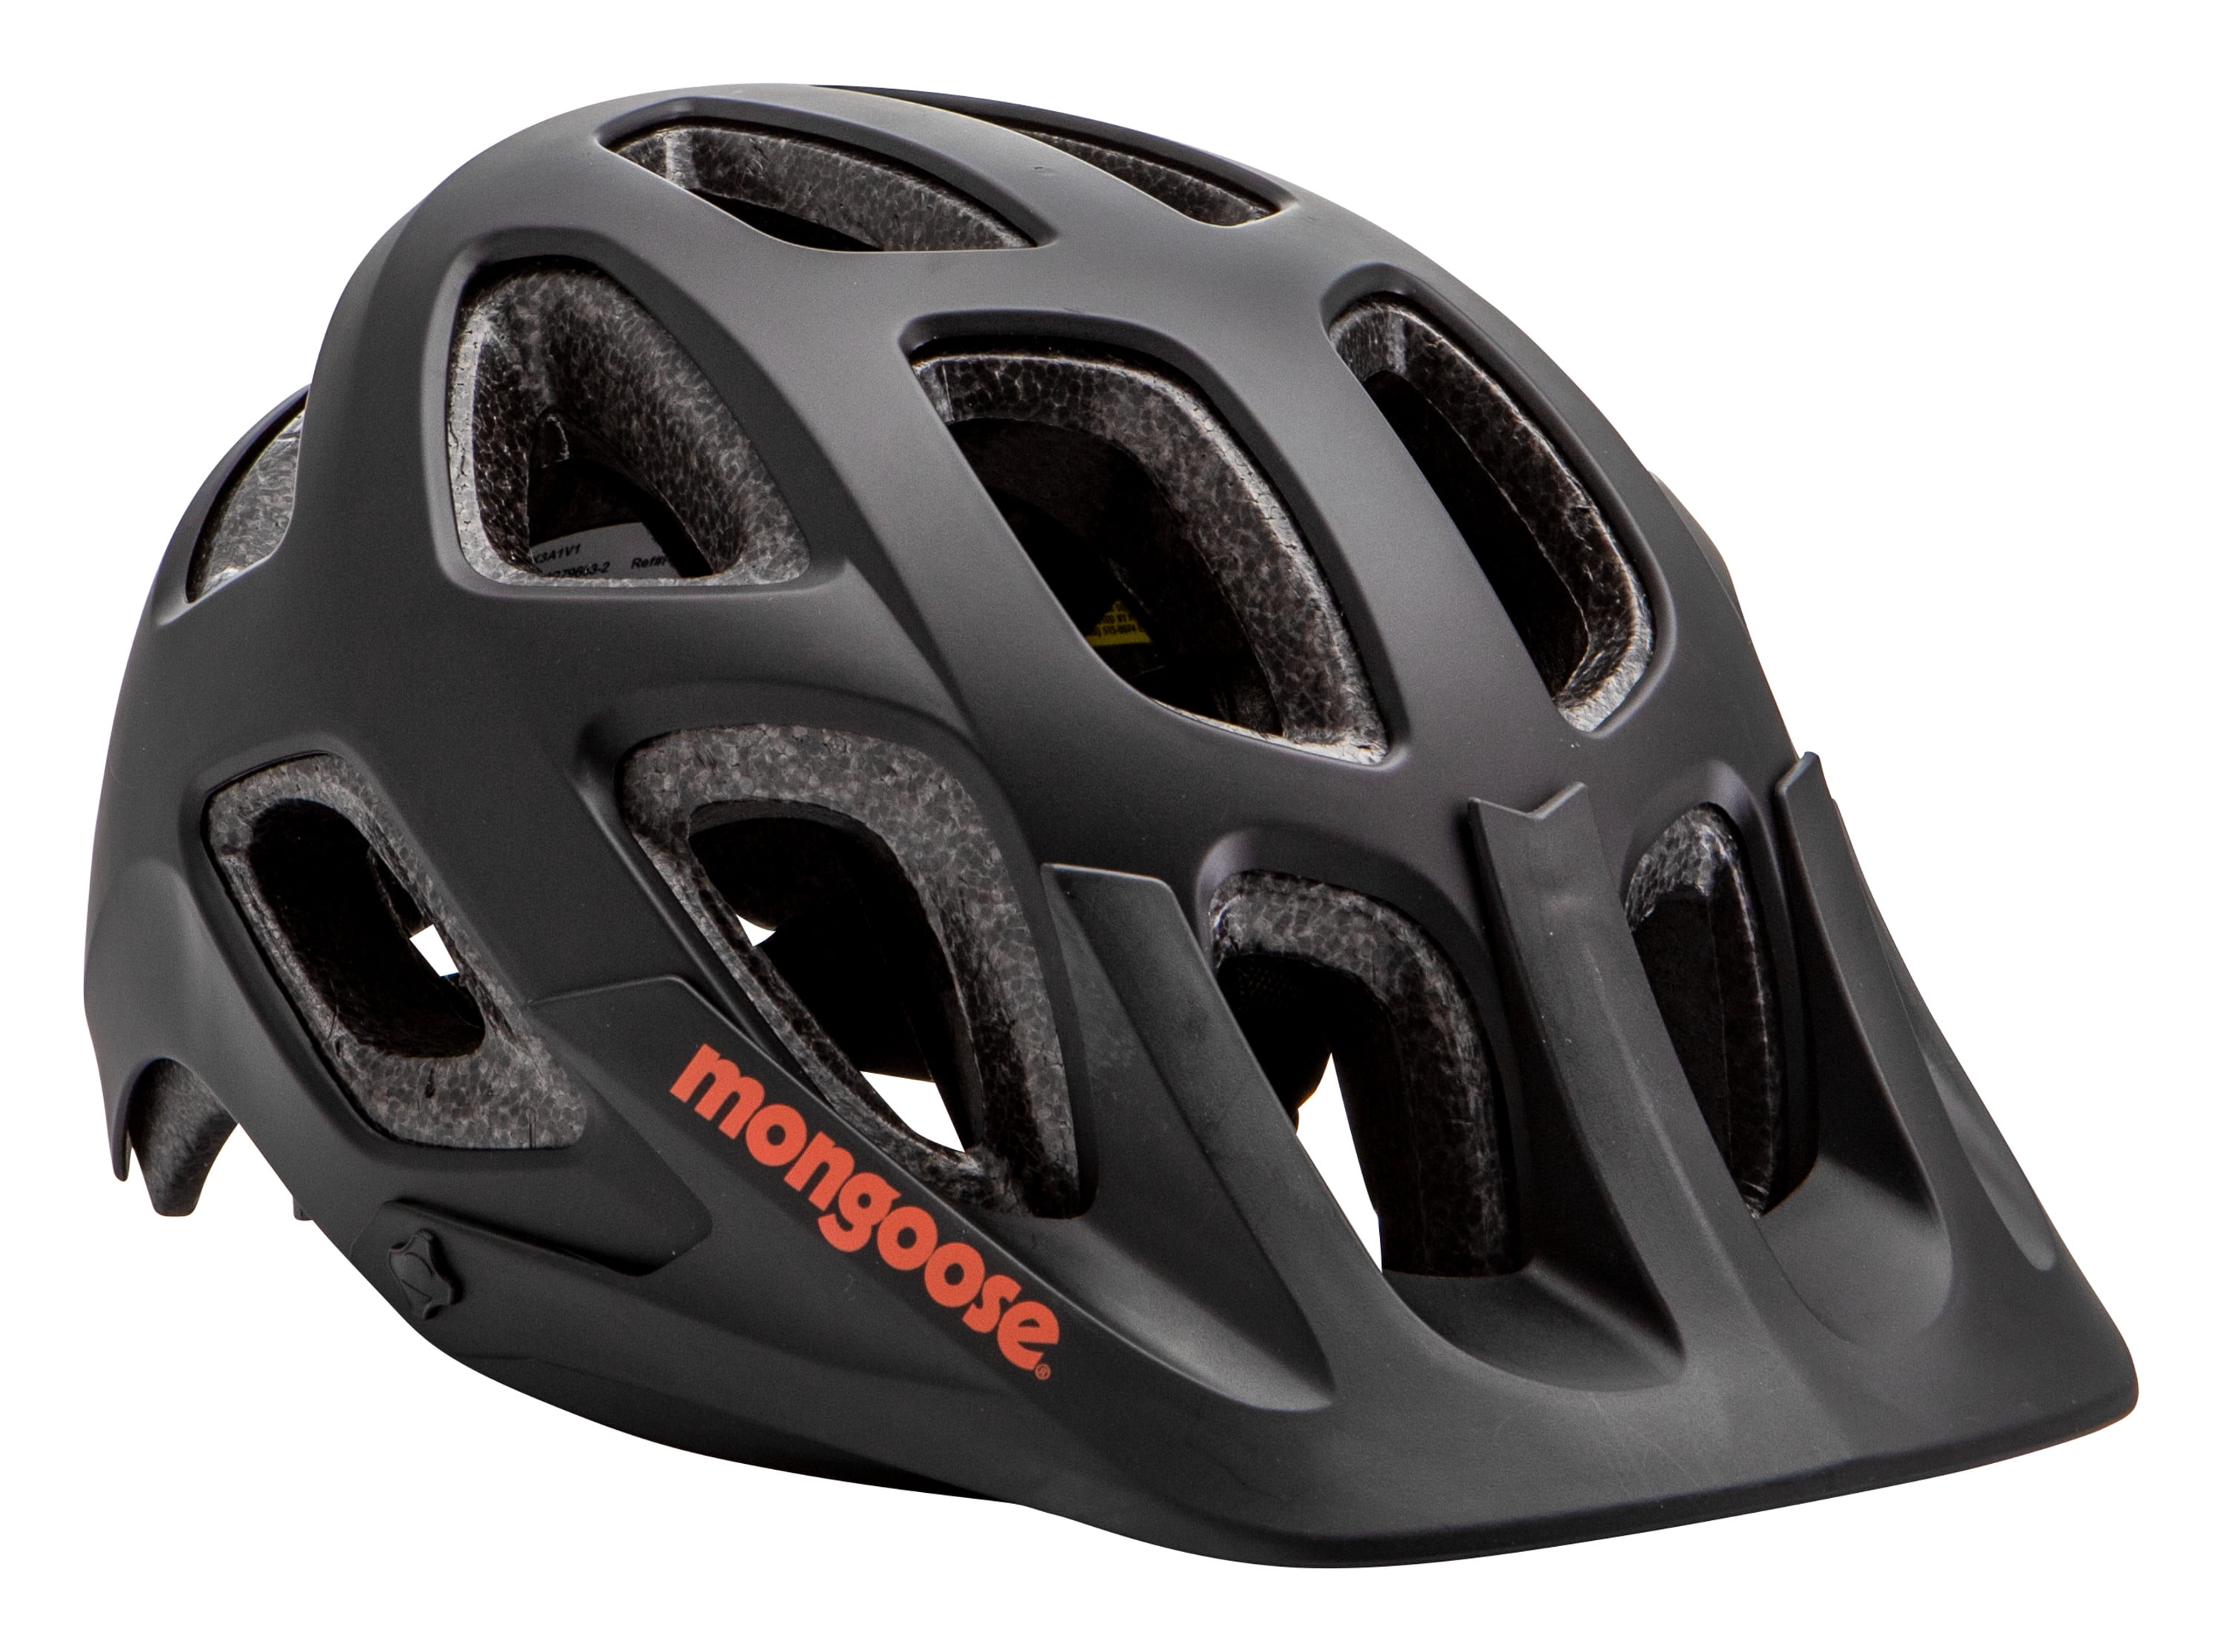 sports cycle helmet